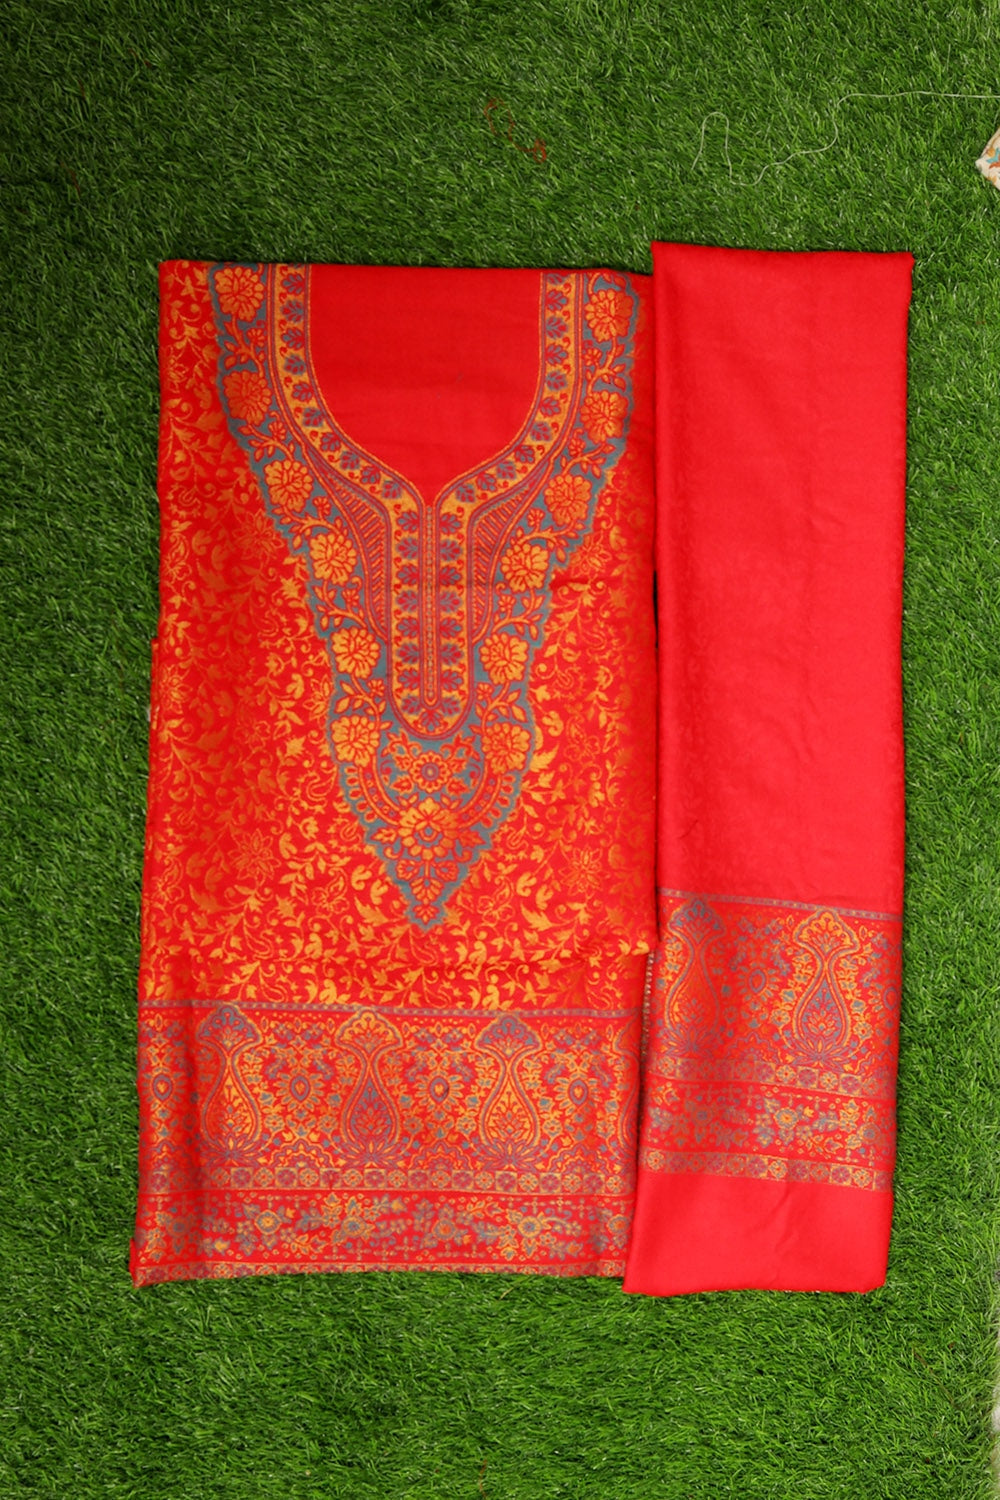 Marvellous Red Colour Cotton Zari Kani Stole Suit With Self